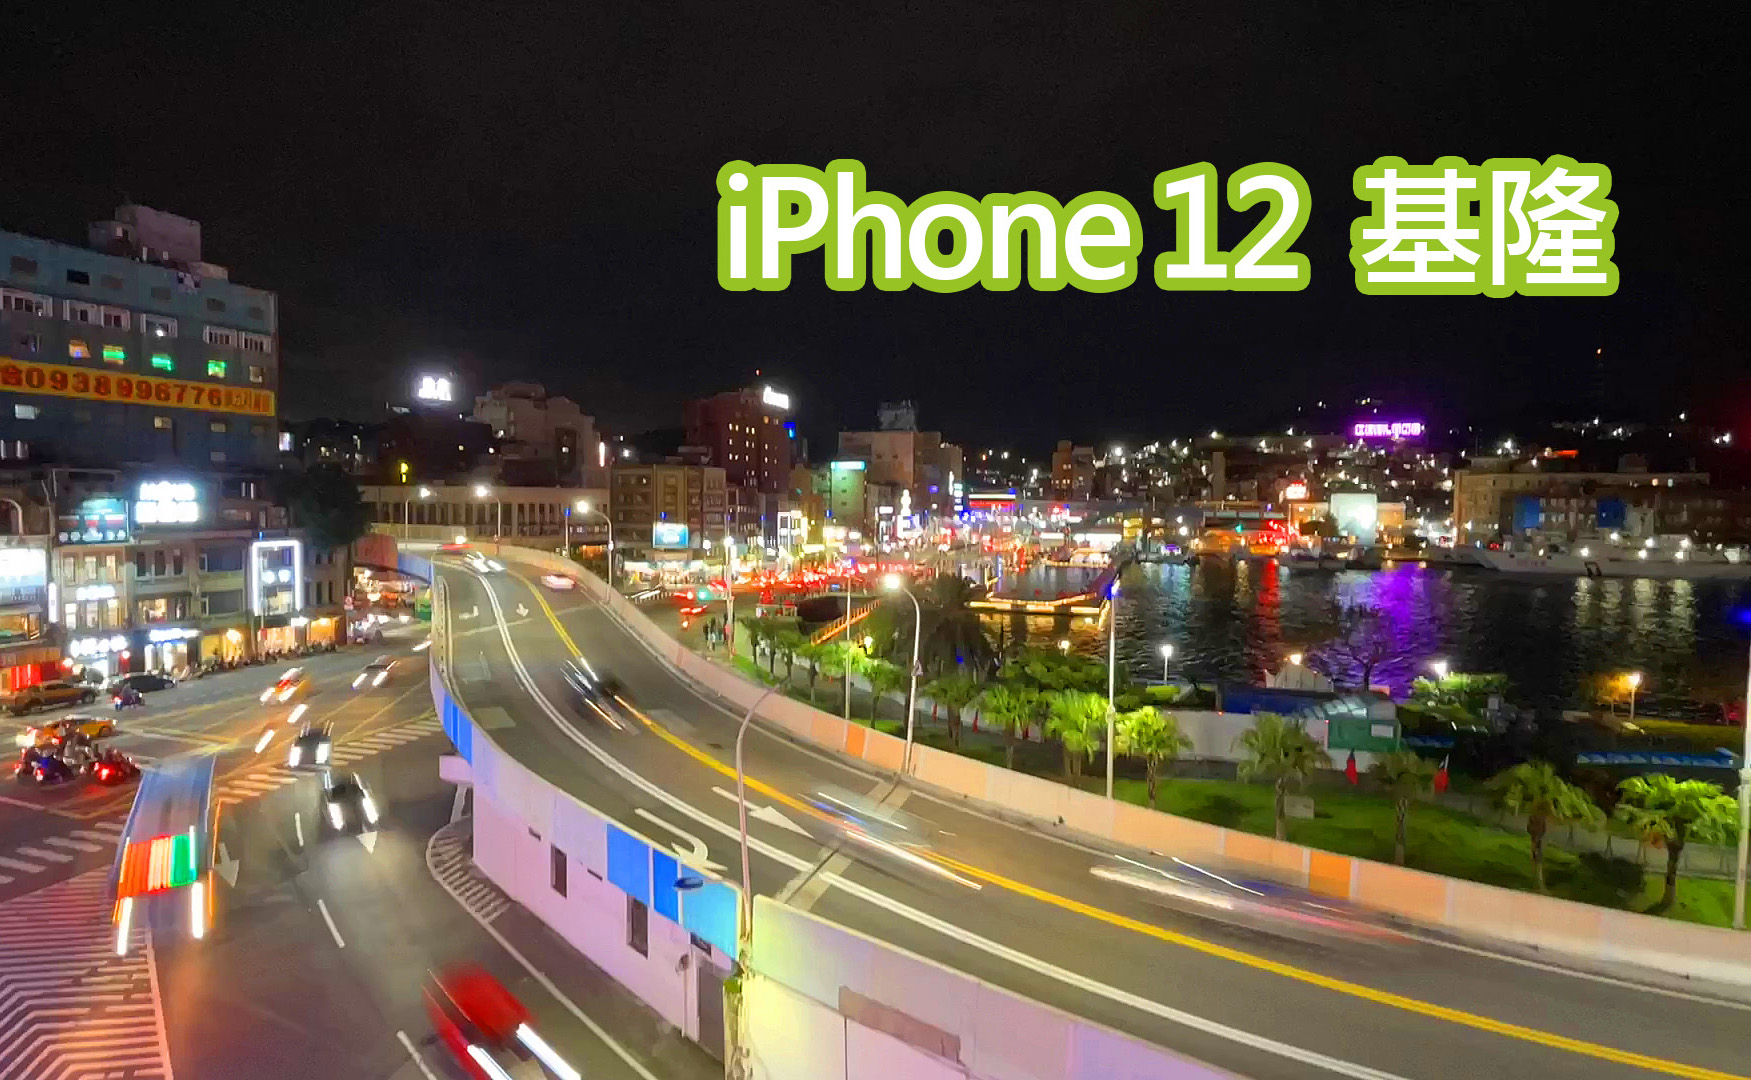 iPhone 12 超廣角夜間縮時攝影、錄影測試 - 基隆夜色